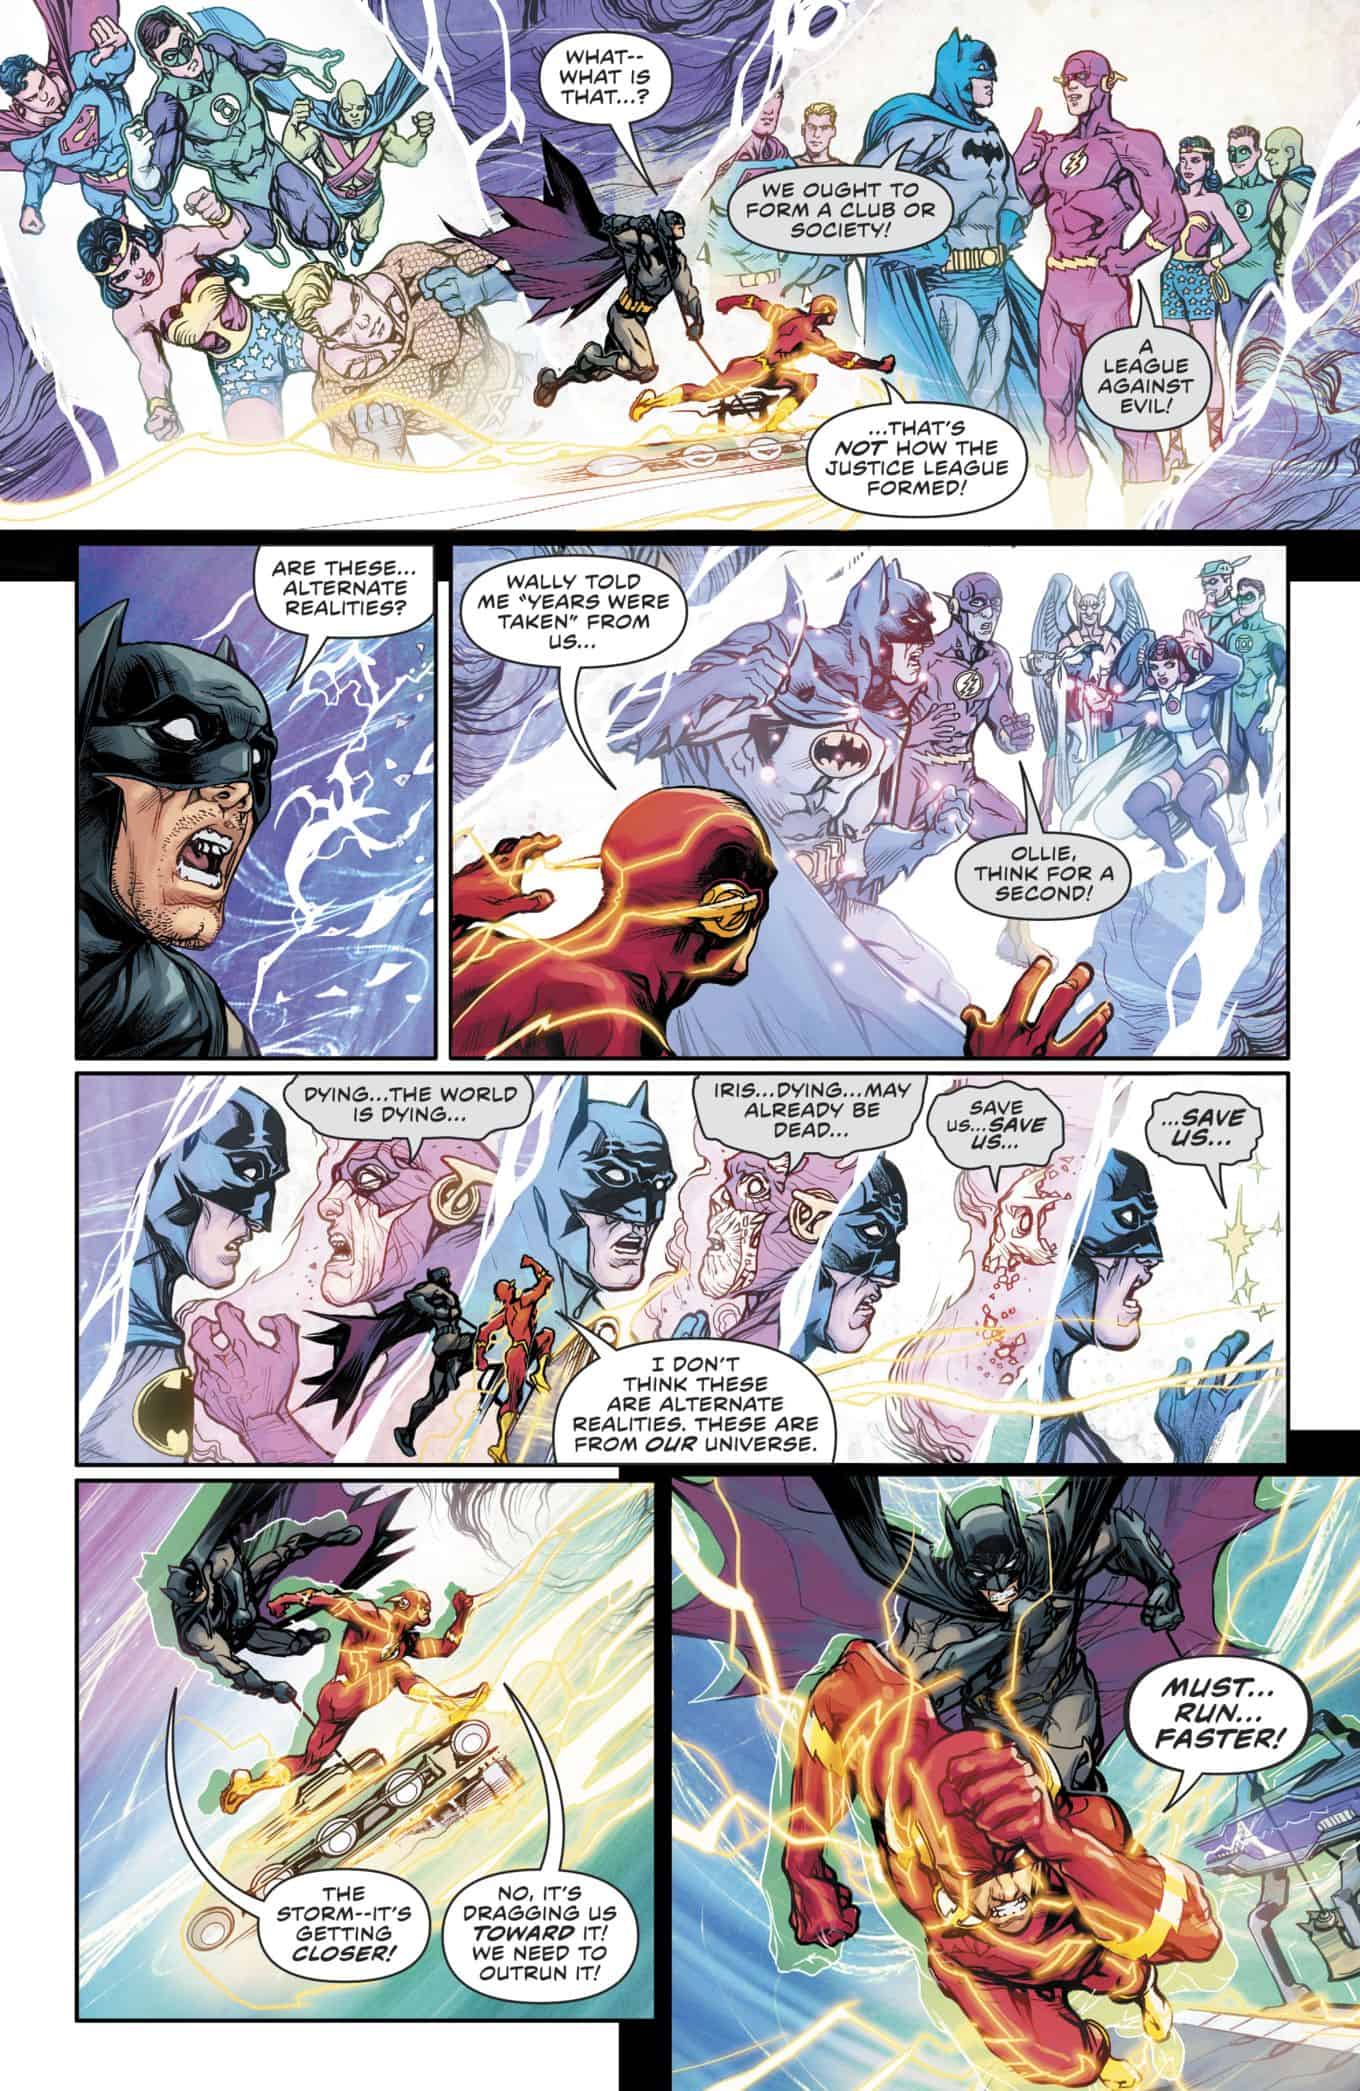 Flash-21-spoilers-the-button-dc-comics-rebirth-1.jpg